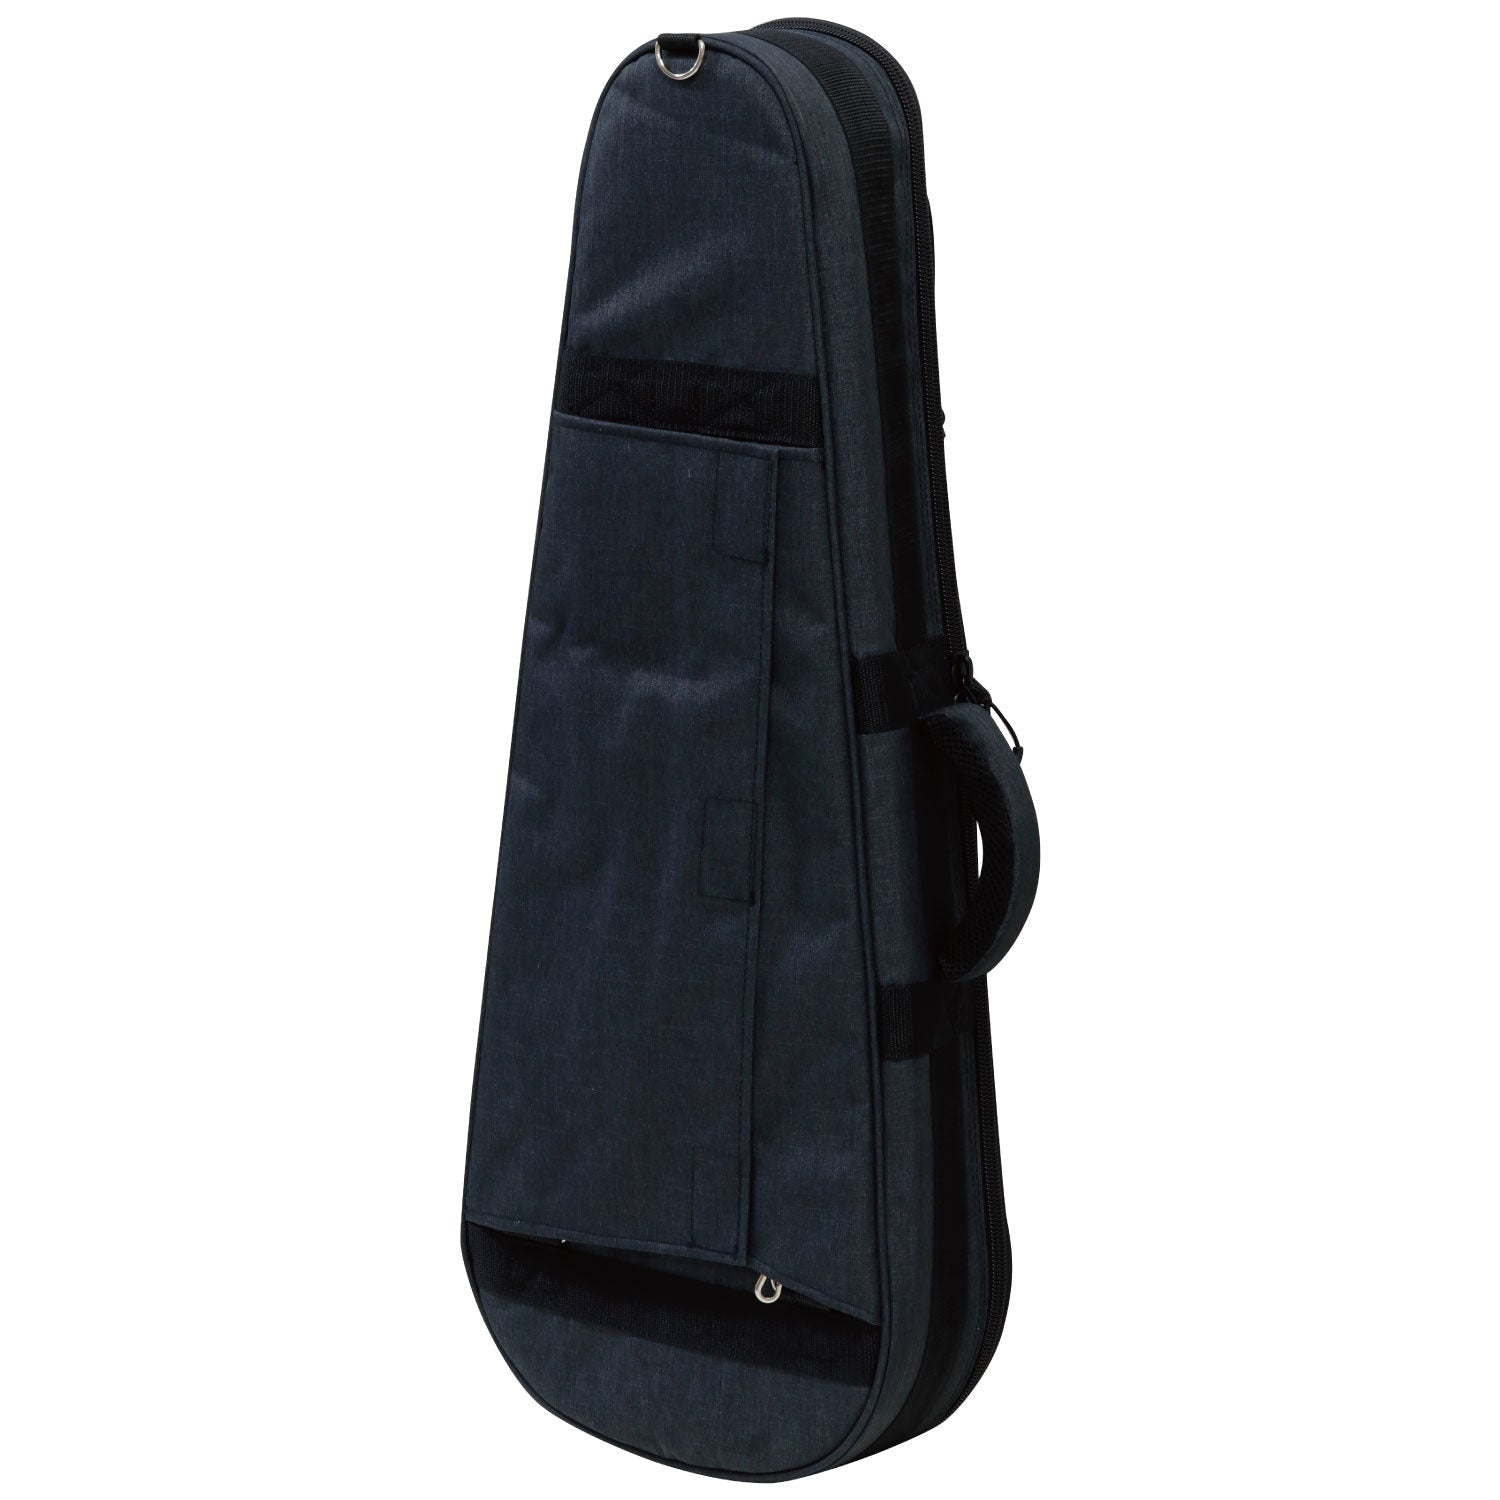 Gig bag for tenor ukulele UKB-60T